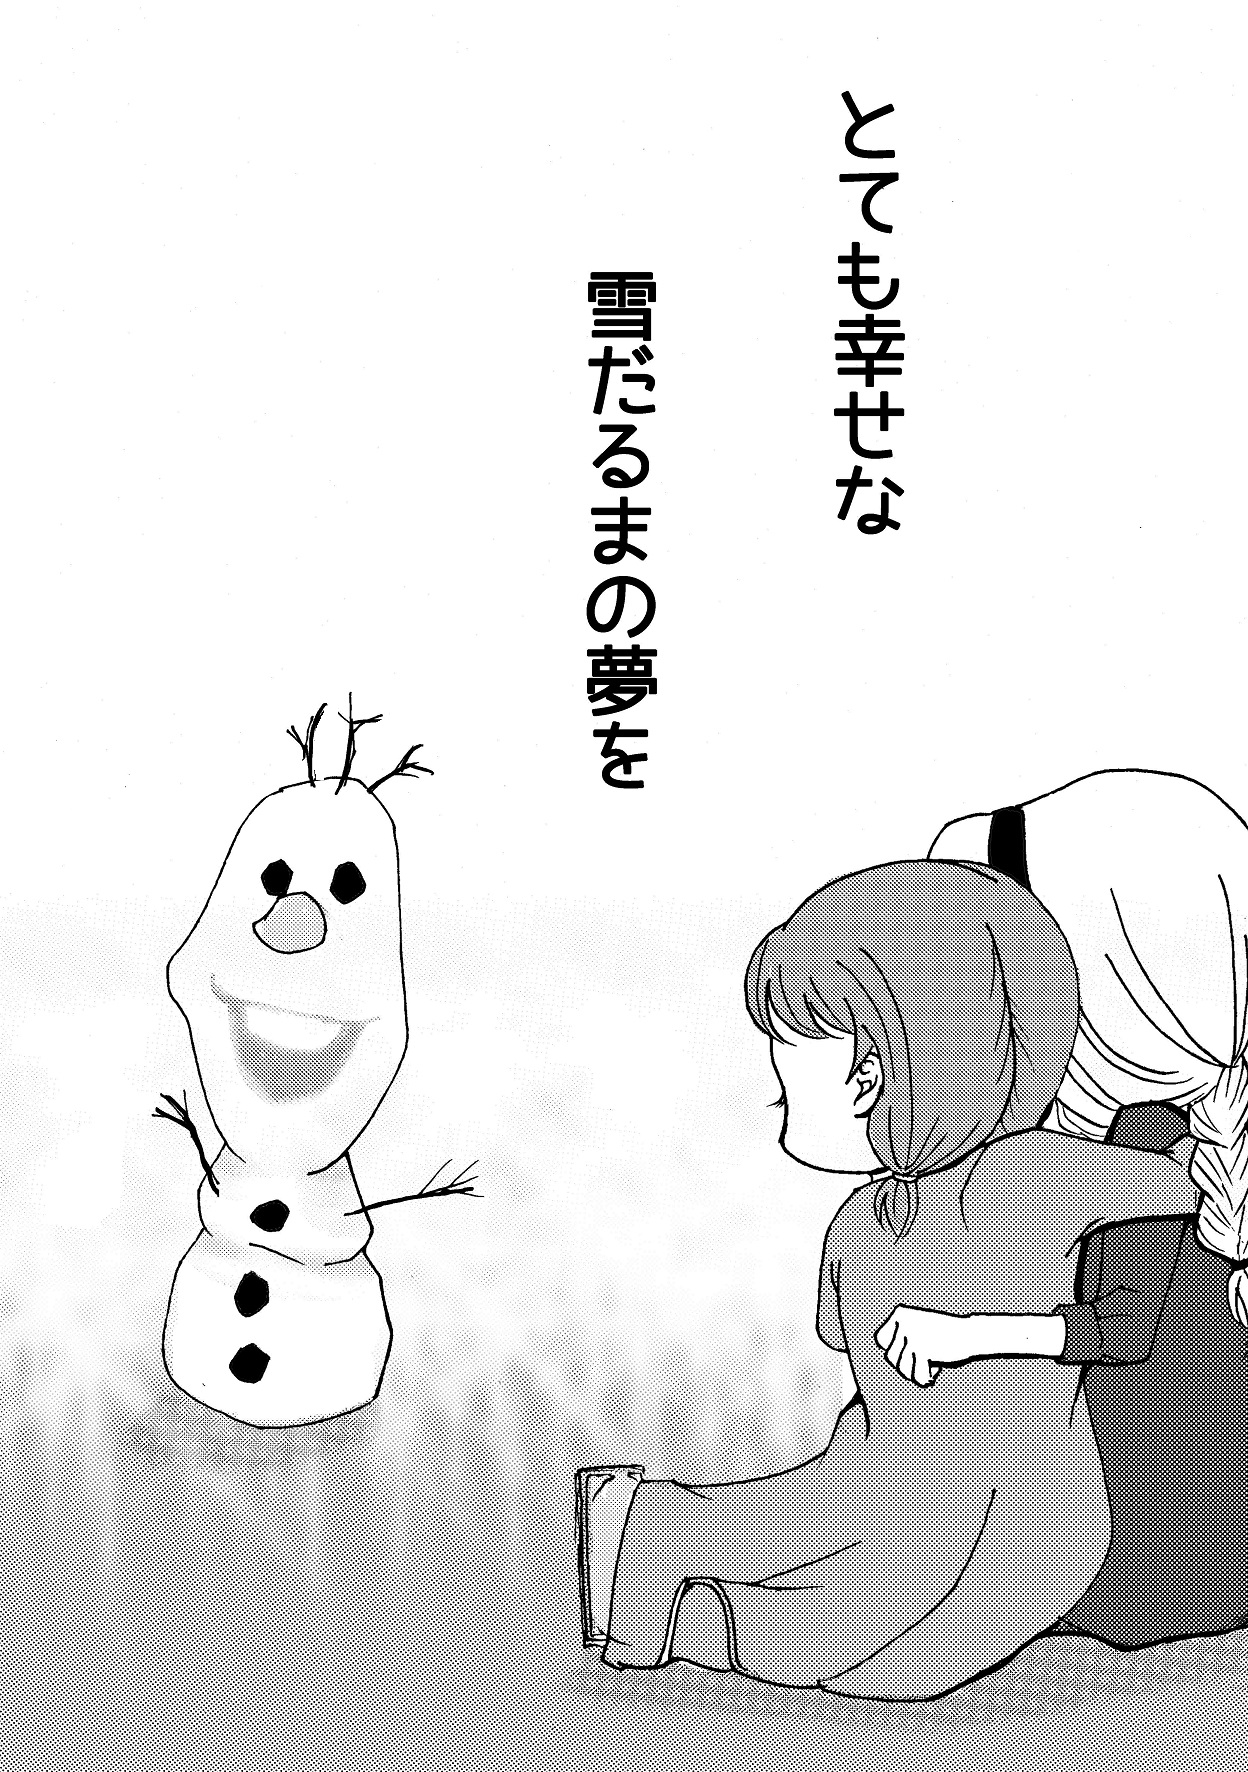 [Nanchuu Erosada] Shiawase na Yukidaruma - A happy snowman (Frozen) [南中尋定] しあわせなゆきだるま A happy snowman (アナと雪の女王)